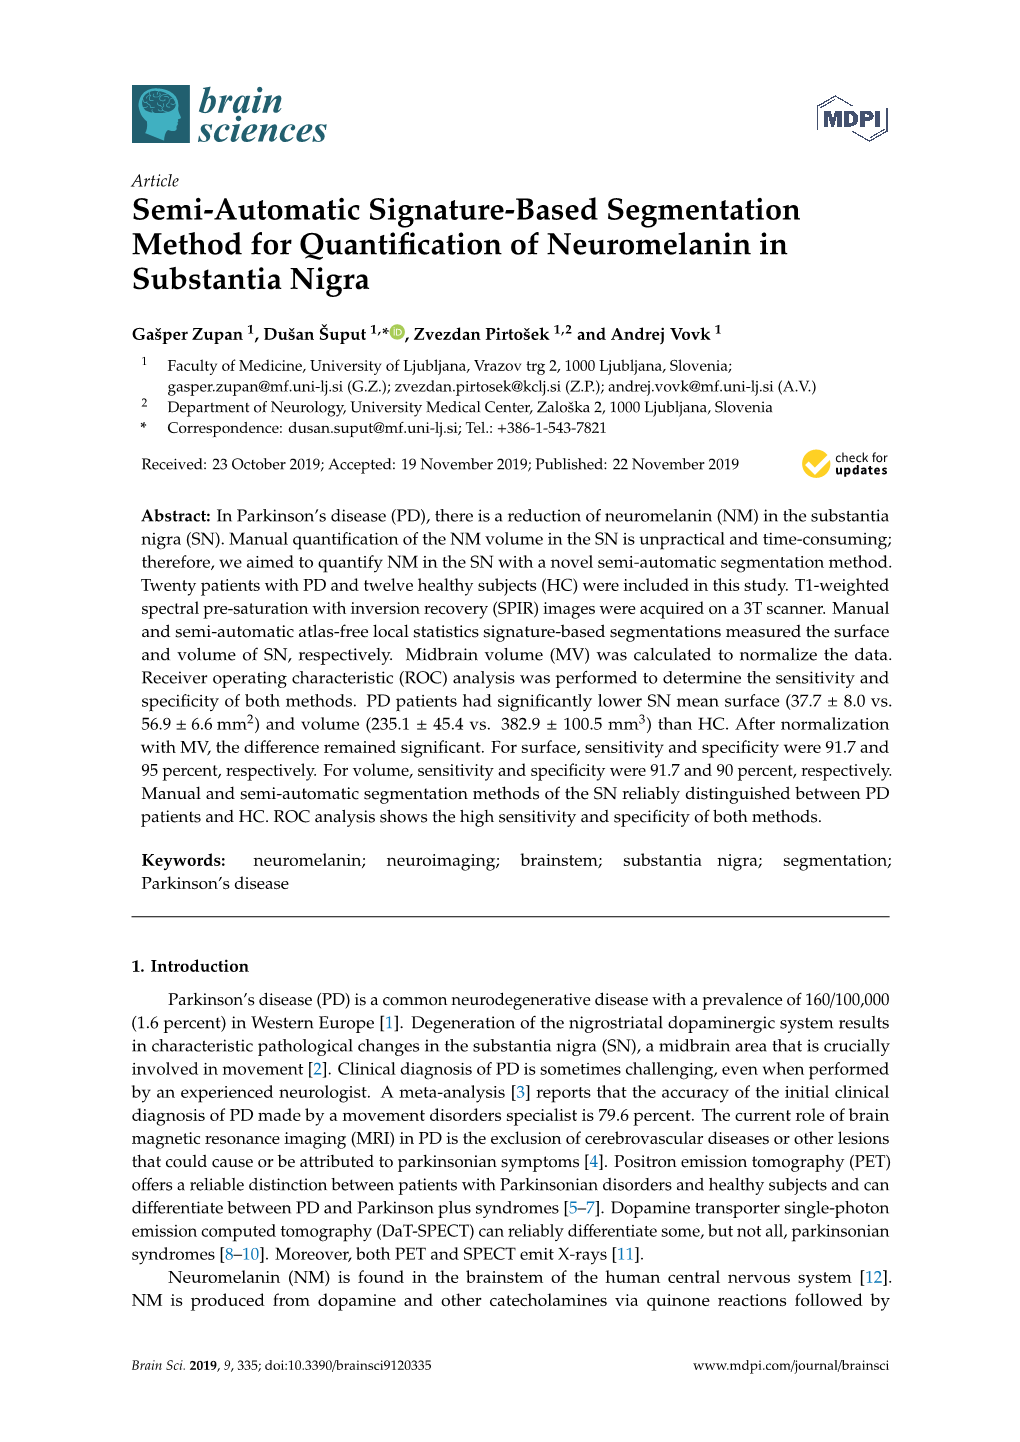 Semi-Automatic Signature-Based Segmentation Method for Quantiﬁcation of Neuromelanin in Substantia Nigra